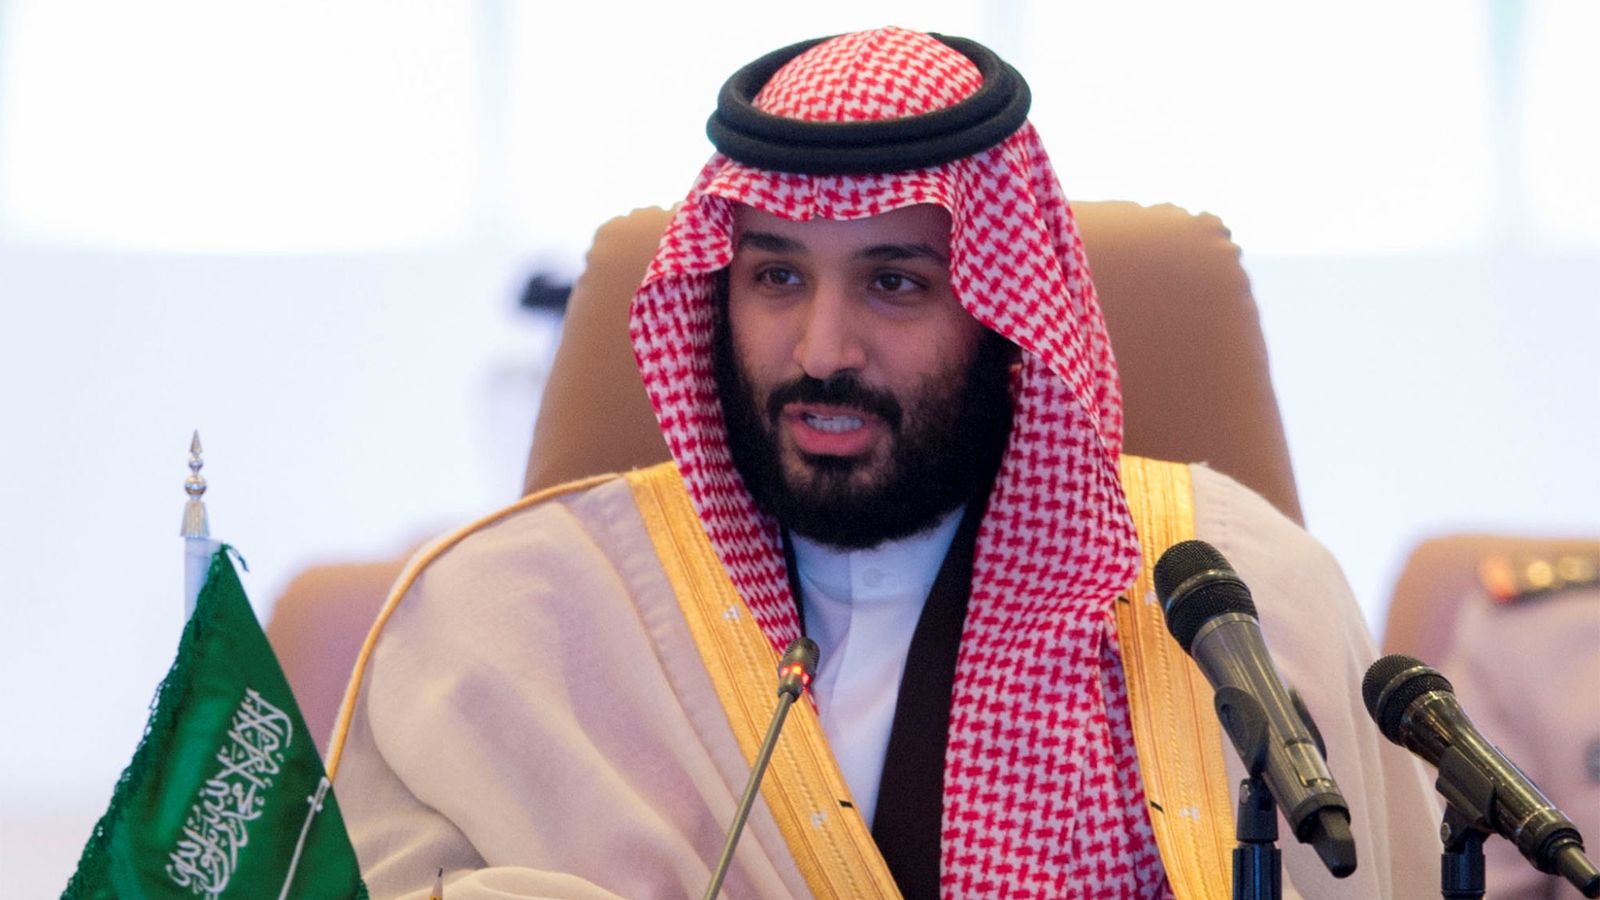 Սաուդյան Արաբիայի գահաժառանգ արքայազնը չի բացառում Իրանի հետ պատերազմը